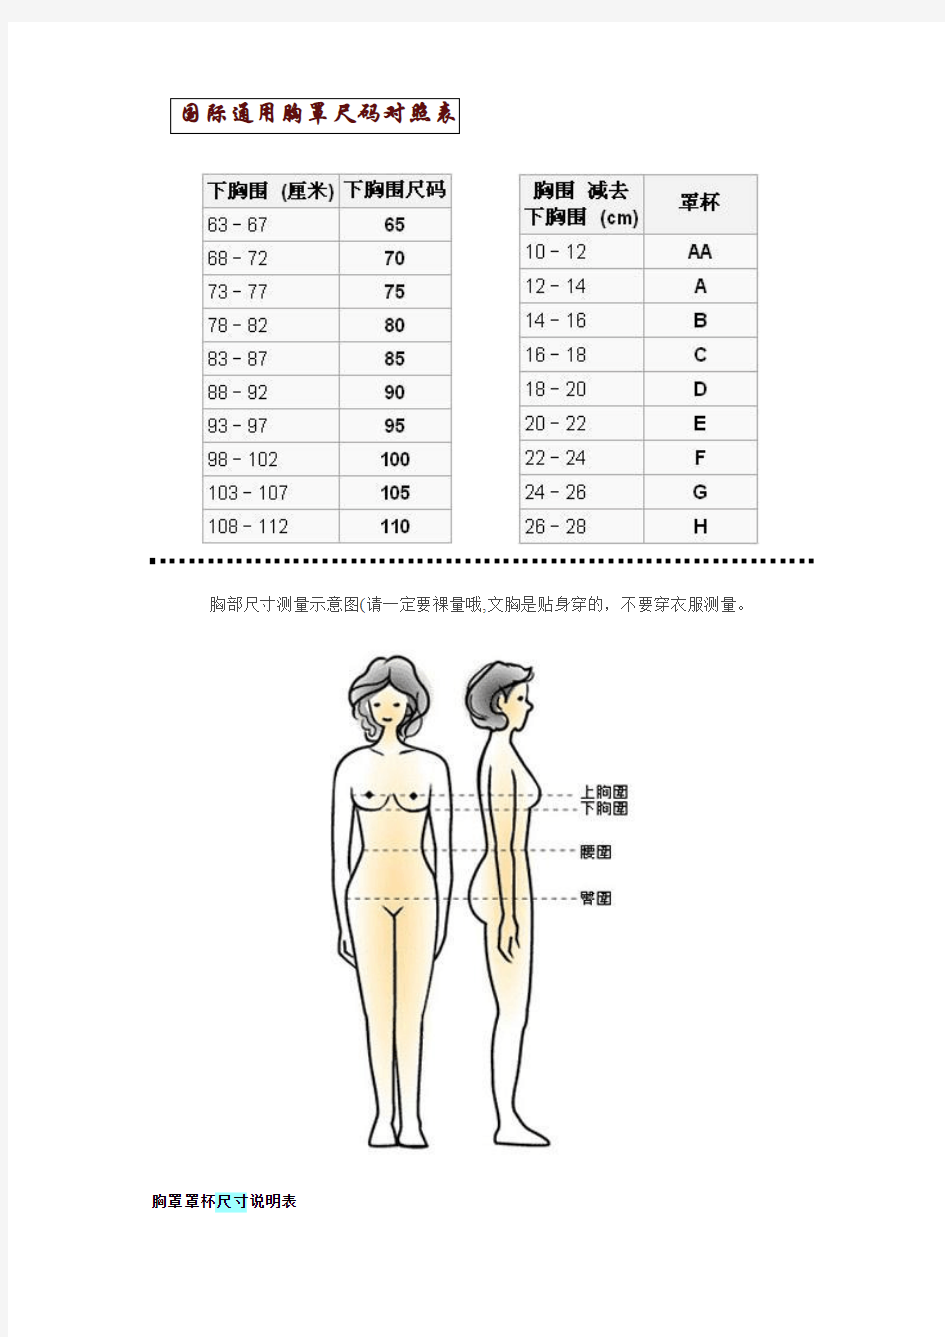 国际通用胸罩尺码对照表 及其他